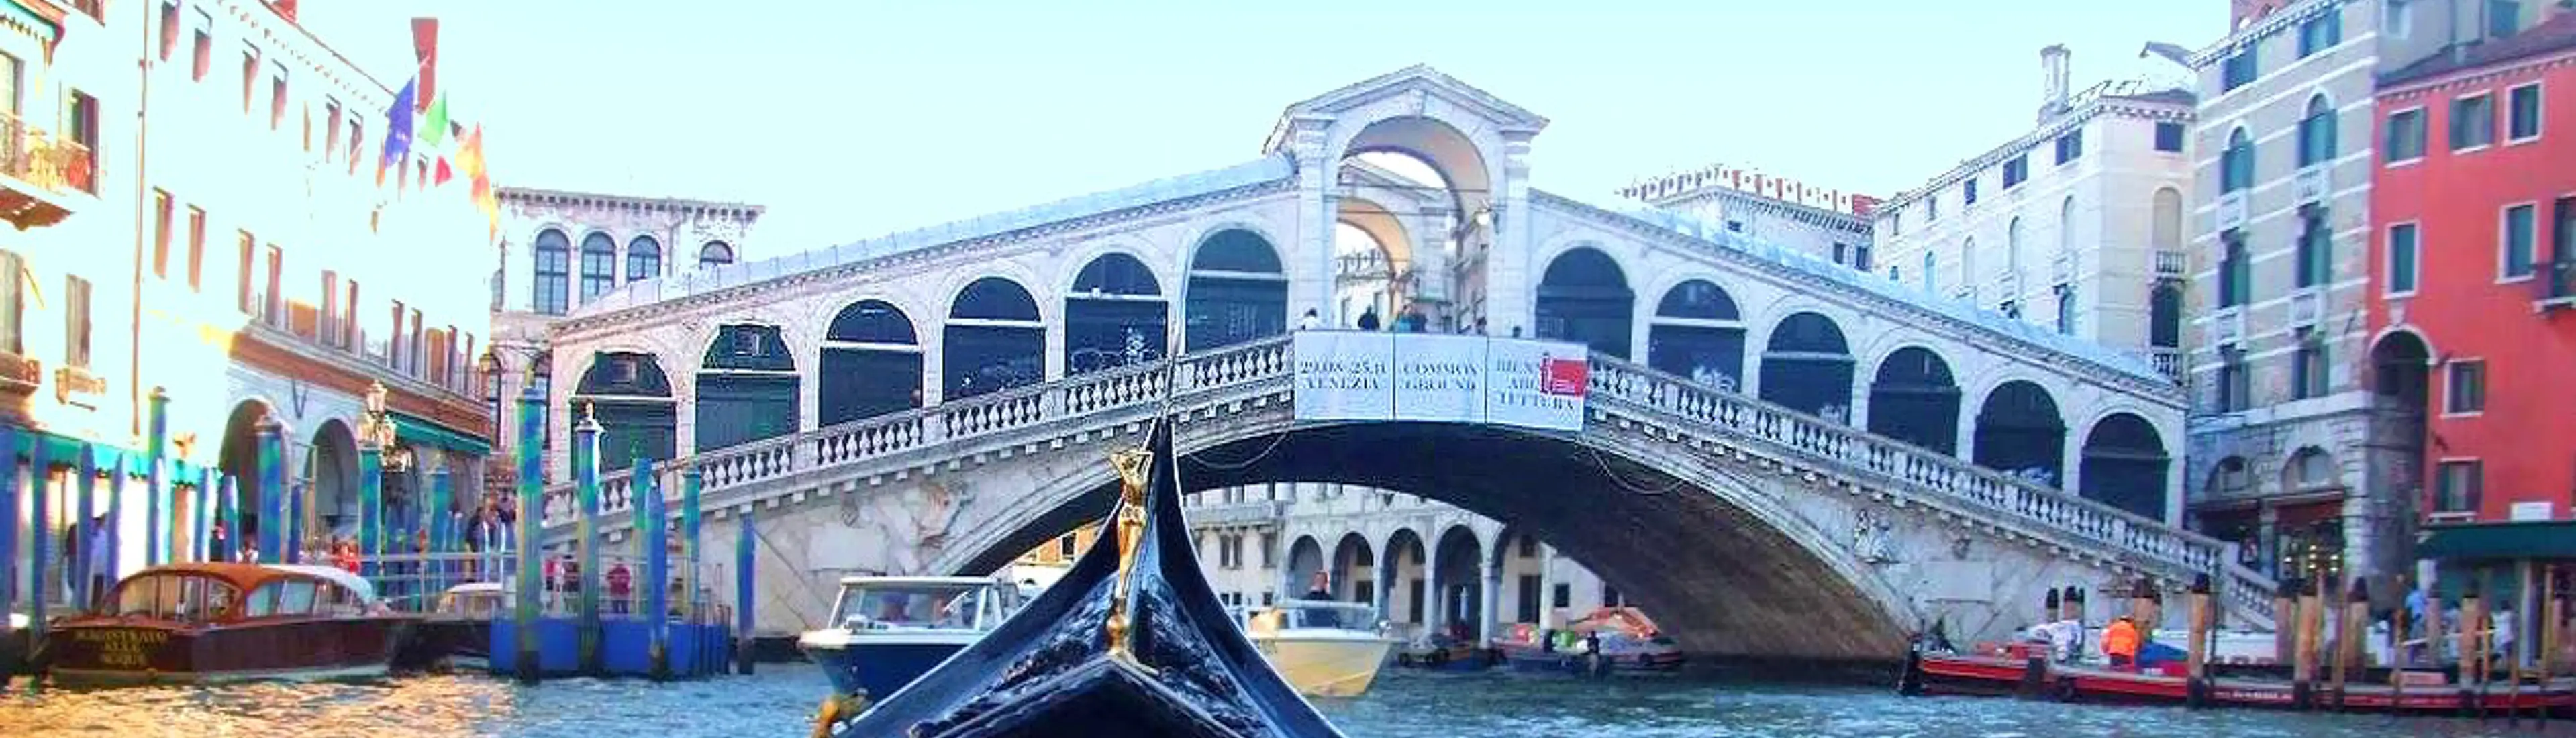 Private Gondola Ride To Grand Canal Rialto Bridge Agenzia Gondolieri Travel Venezia